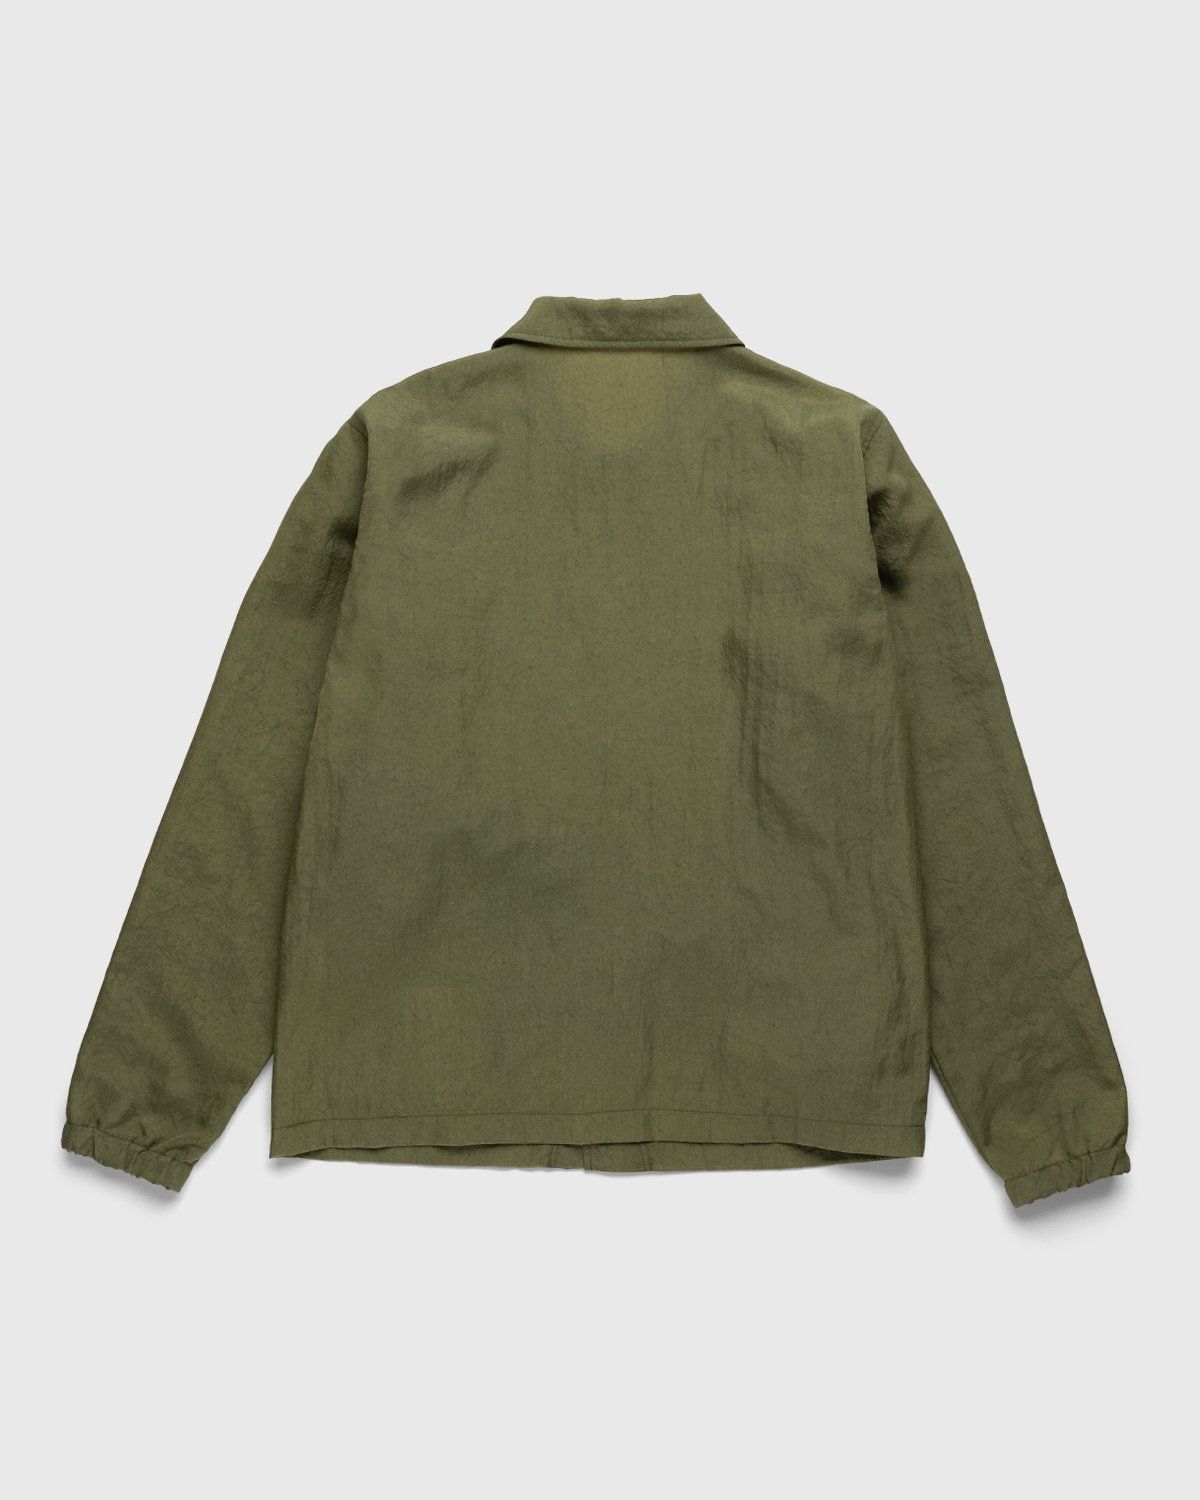 Highsnobiety – Stonewashed Nylon Coach Jacket Olive - Outerwear - Green - Image 2